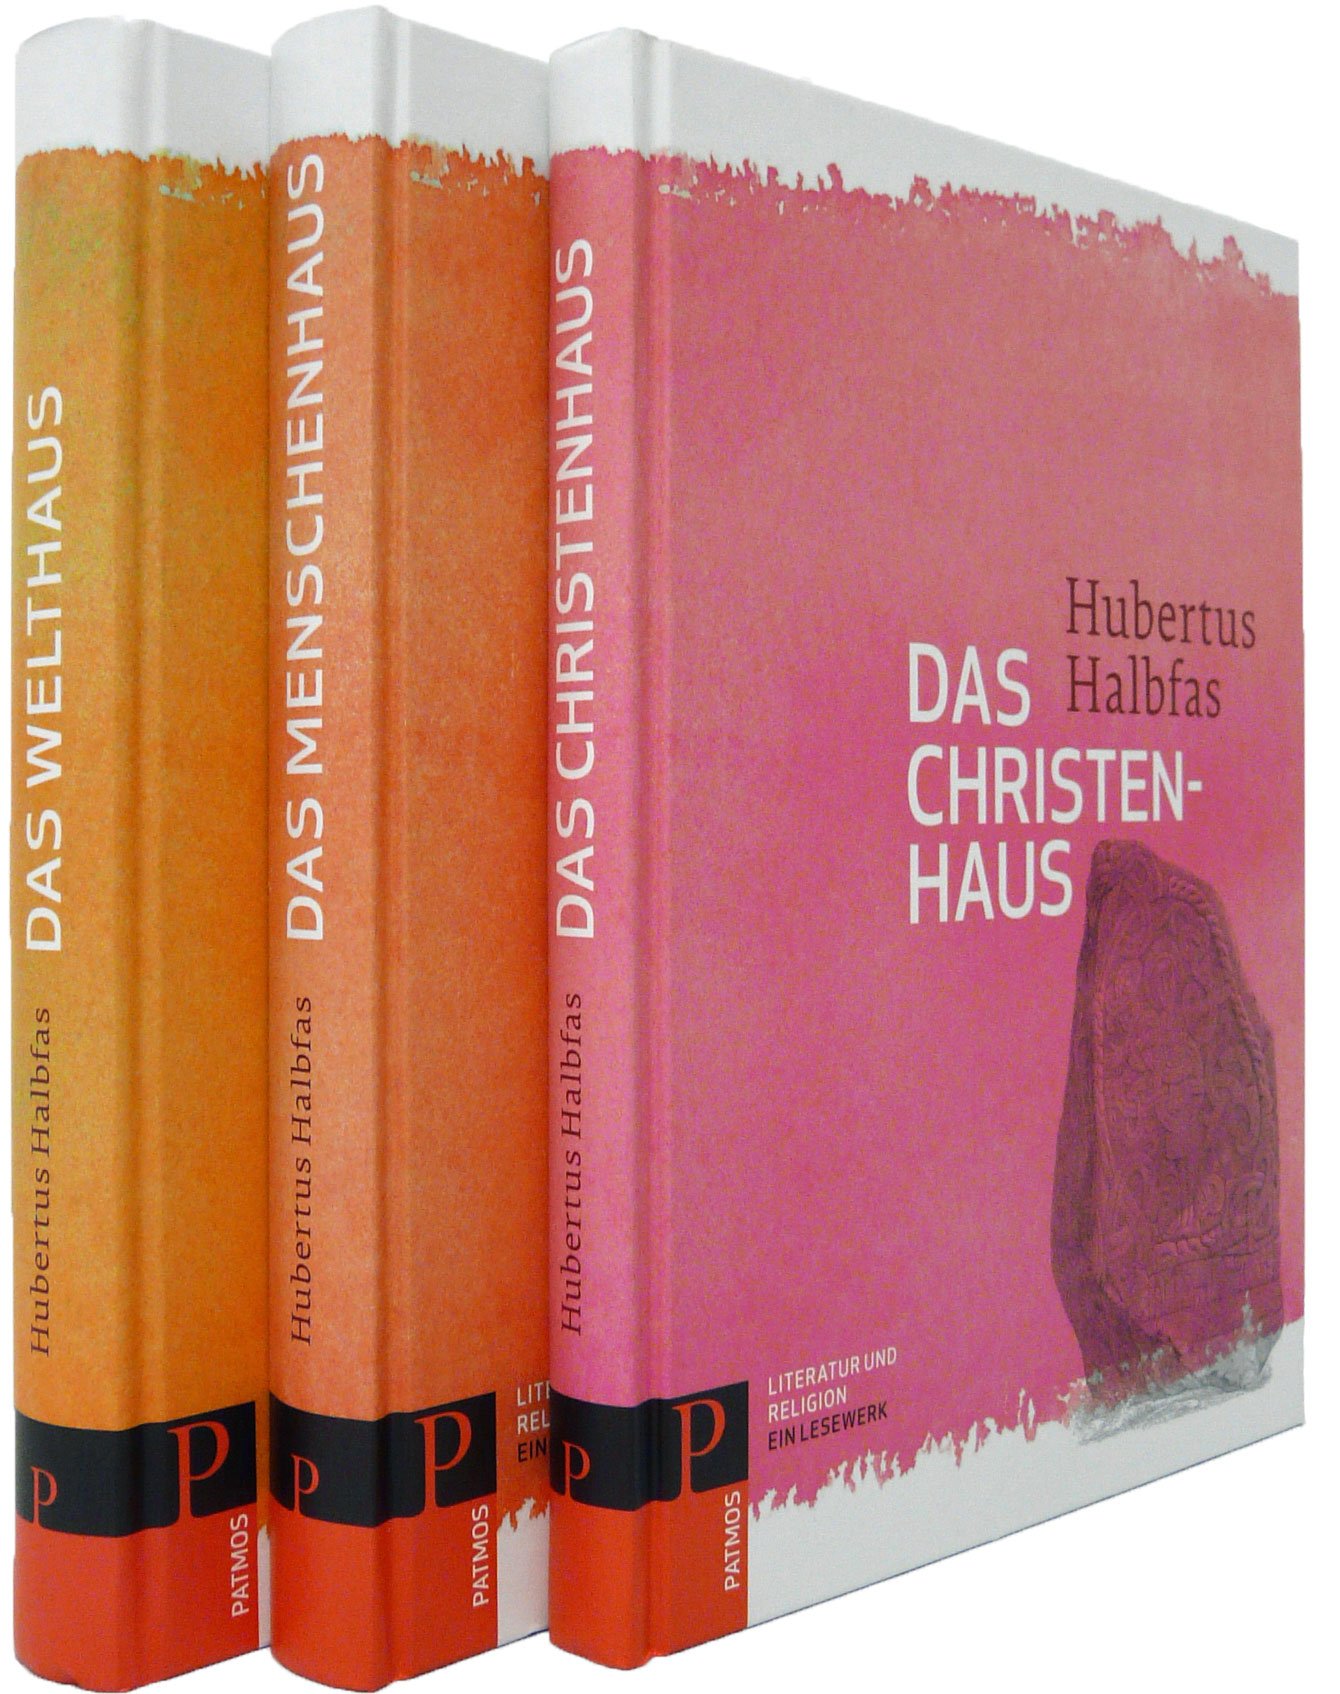 Literatur und Religion in 3 Bänden - Cover